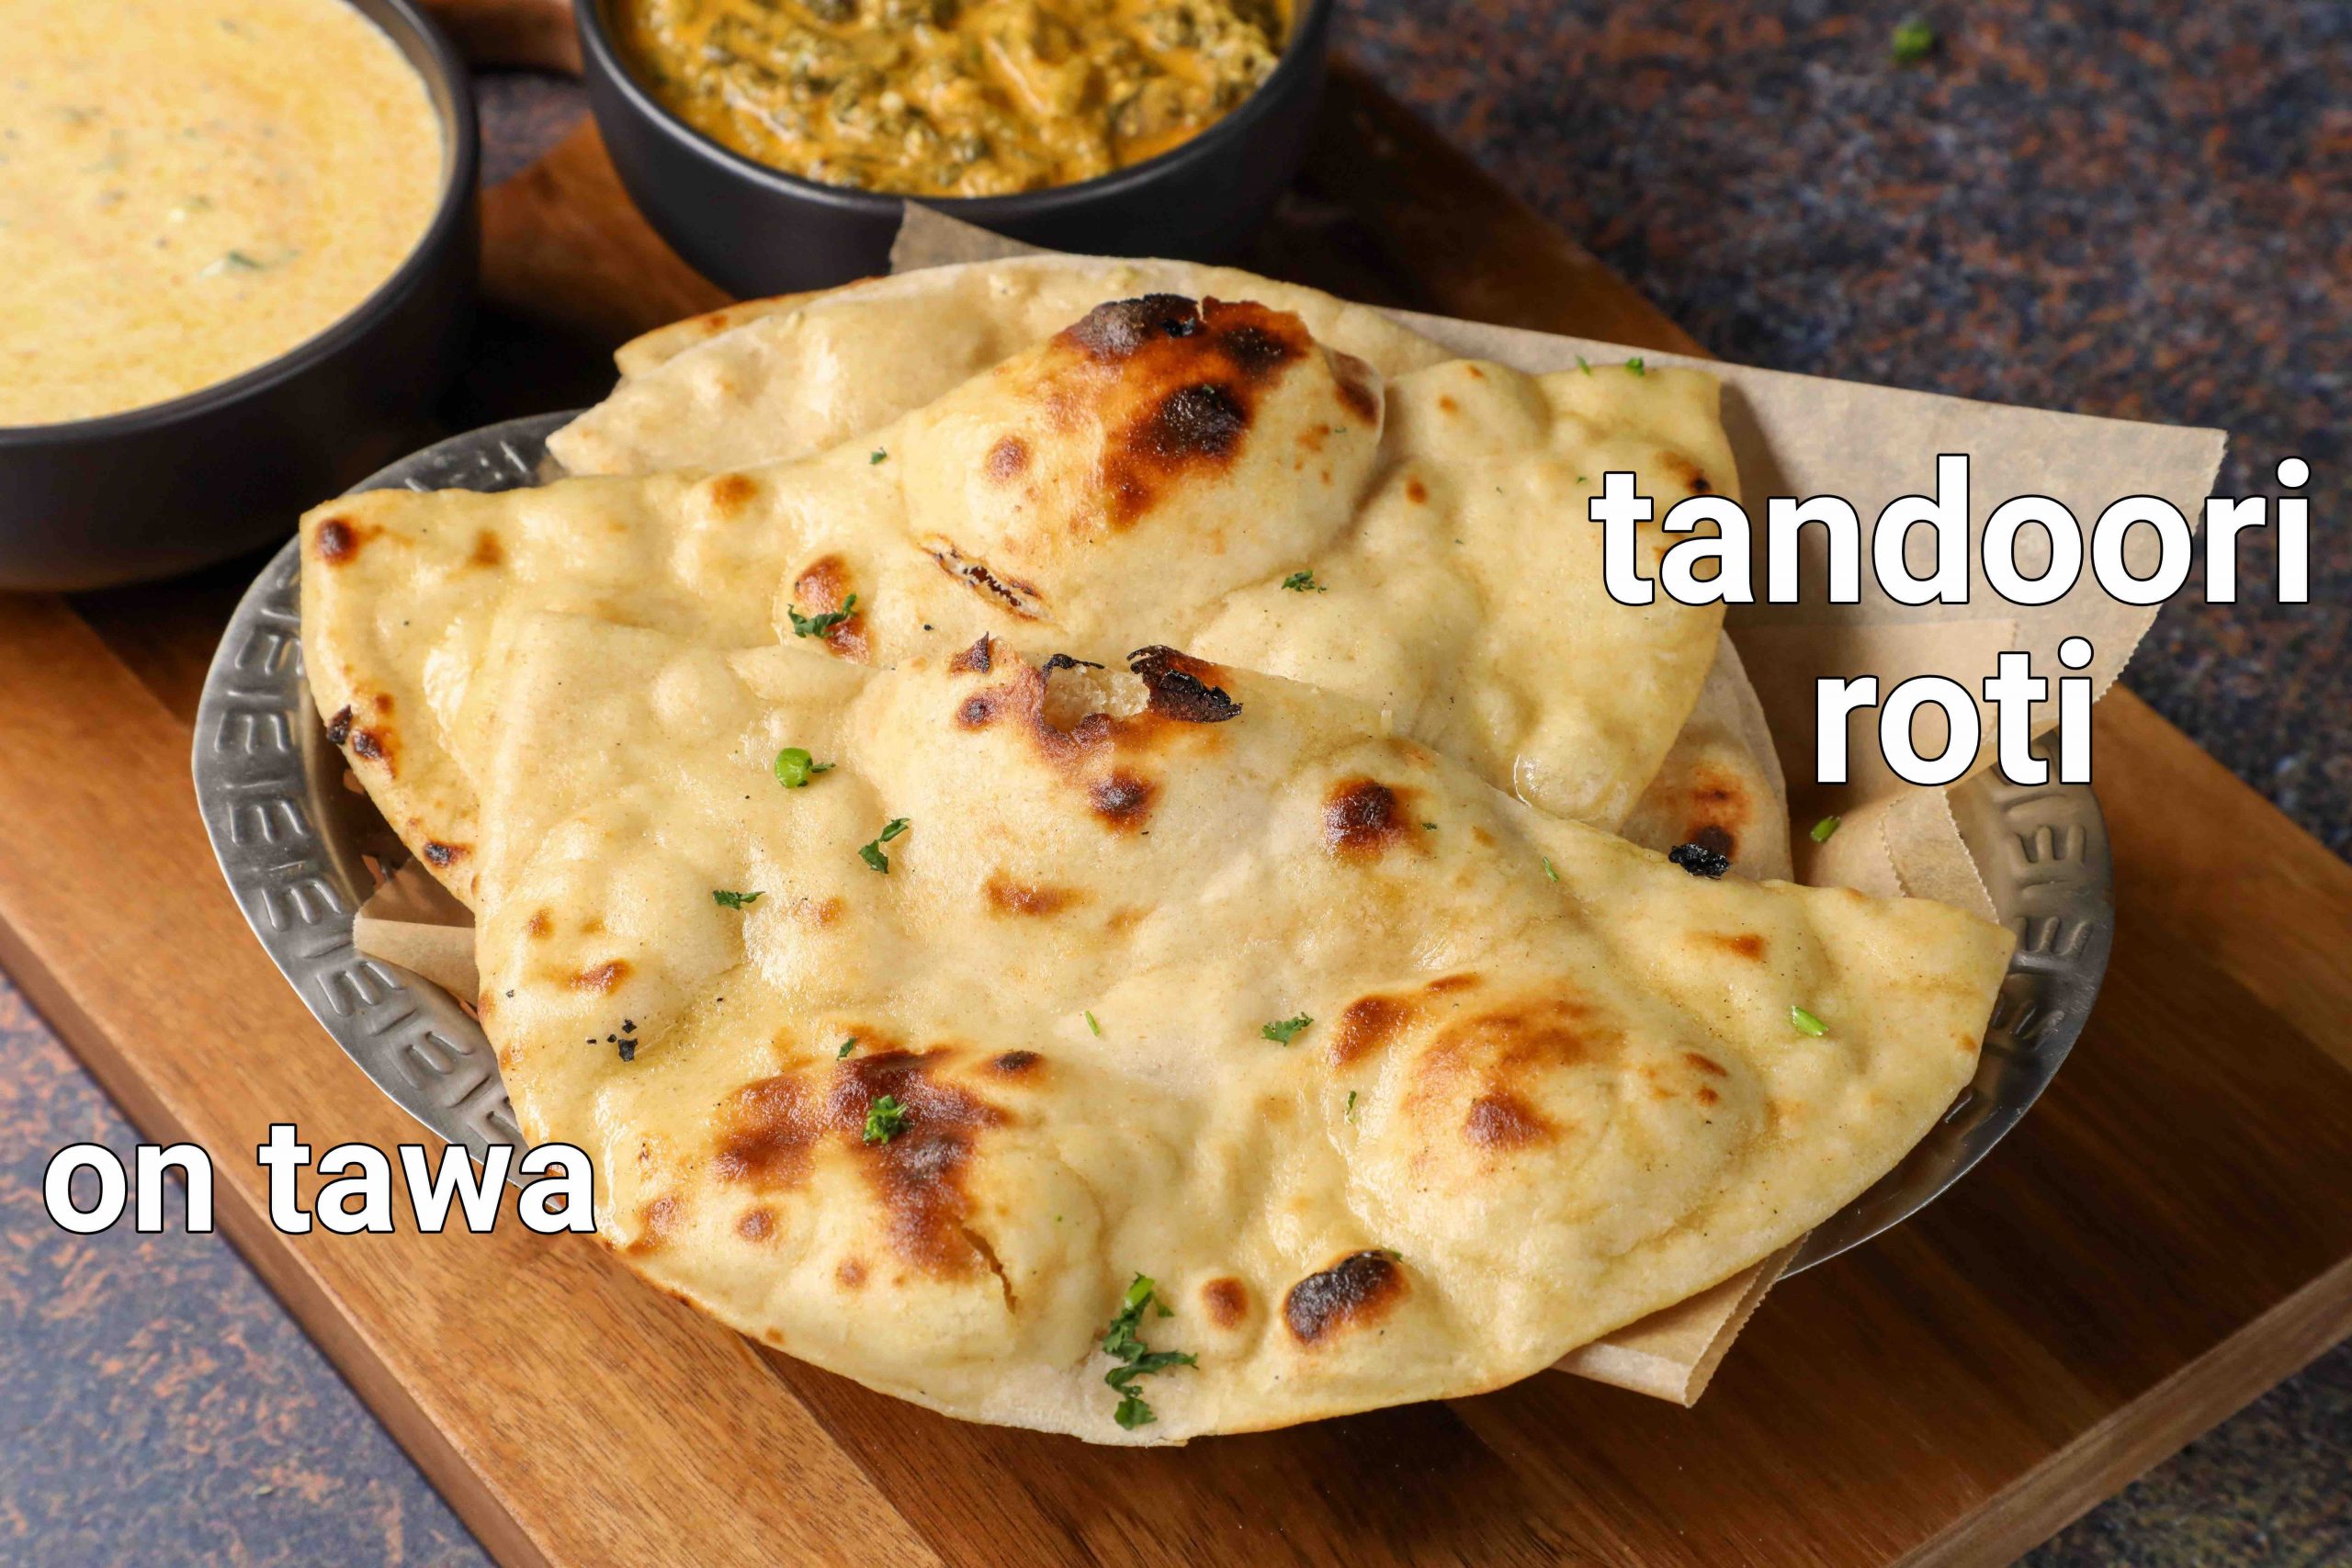 https://hebbarskitchen.com/wp-content/uploads/2020/12/tandoori-roti-recipe-on-tawa-butter-tandoori-roti-at-home-tandoori-roti-naan-1-scaled.jpeg